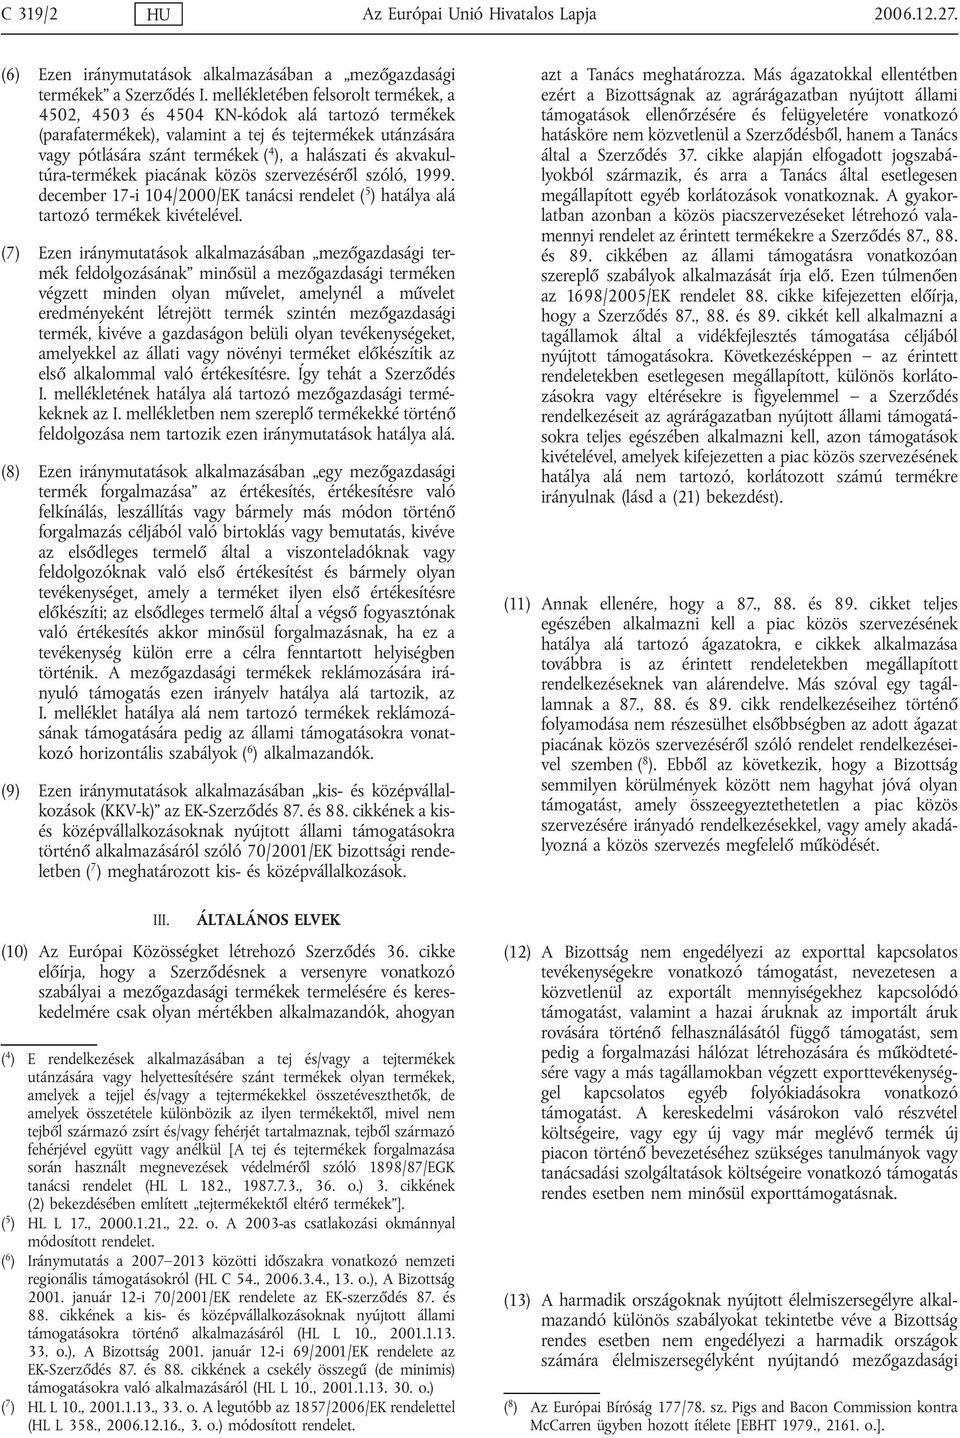 akvakultúra-termékek piacának közös szervezéséről szóló, 1999. december 17-i 104/2000/EK tanácsi rendelet ( 5 ) hatálya alá tartozó termékek kivételével.